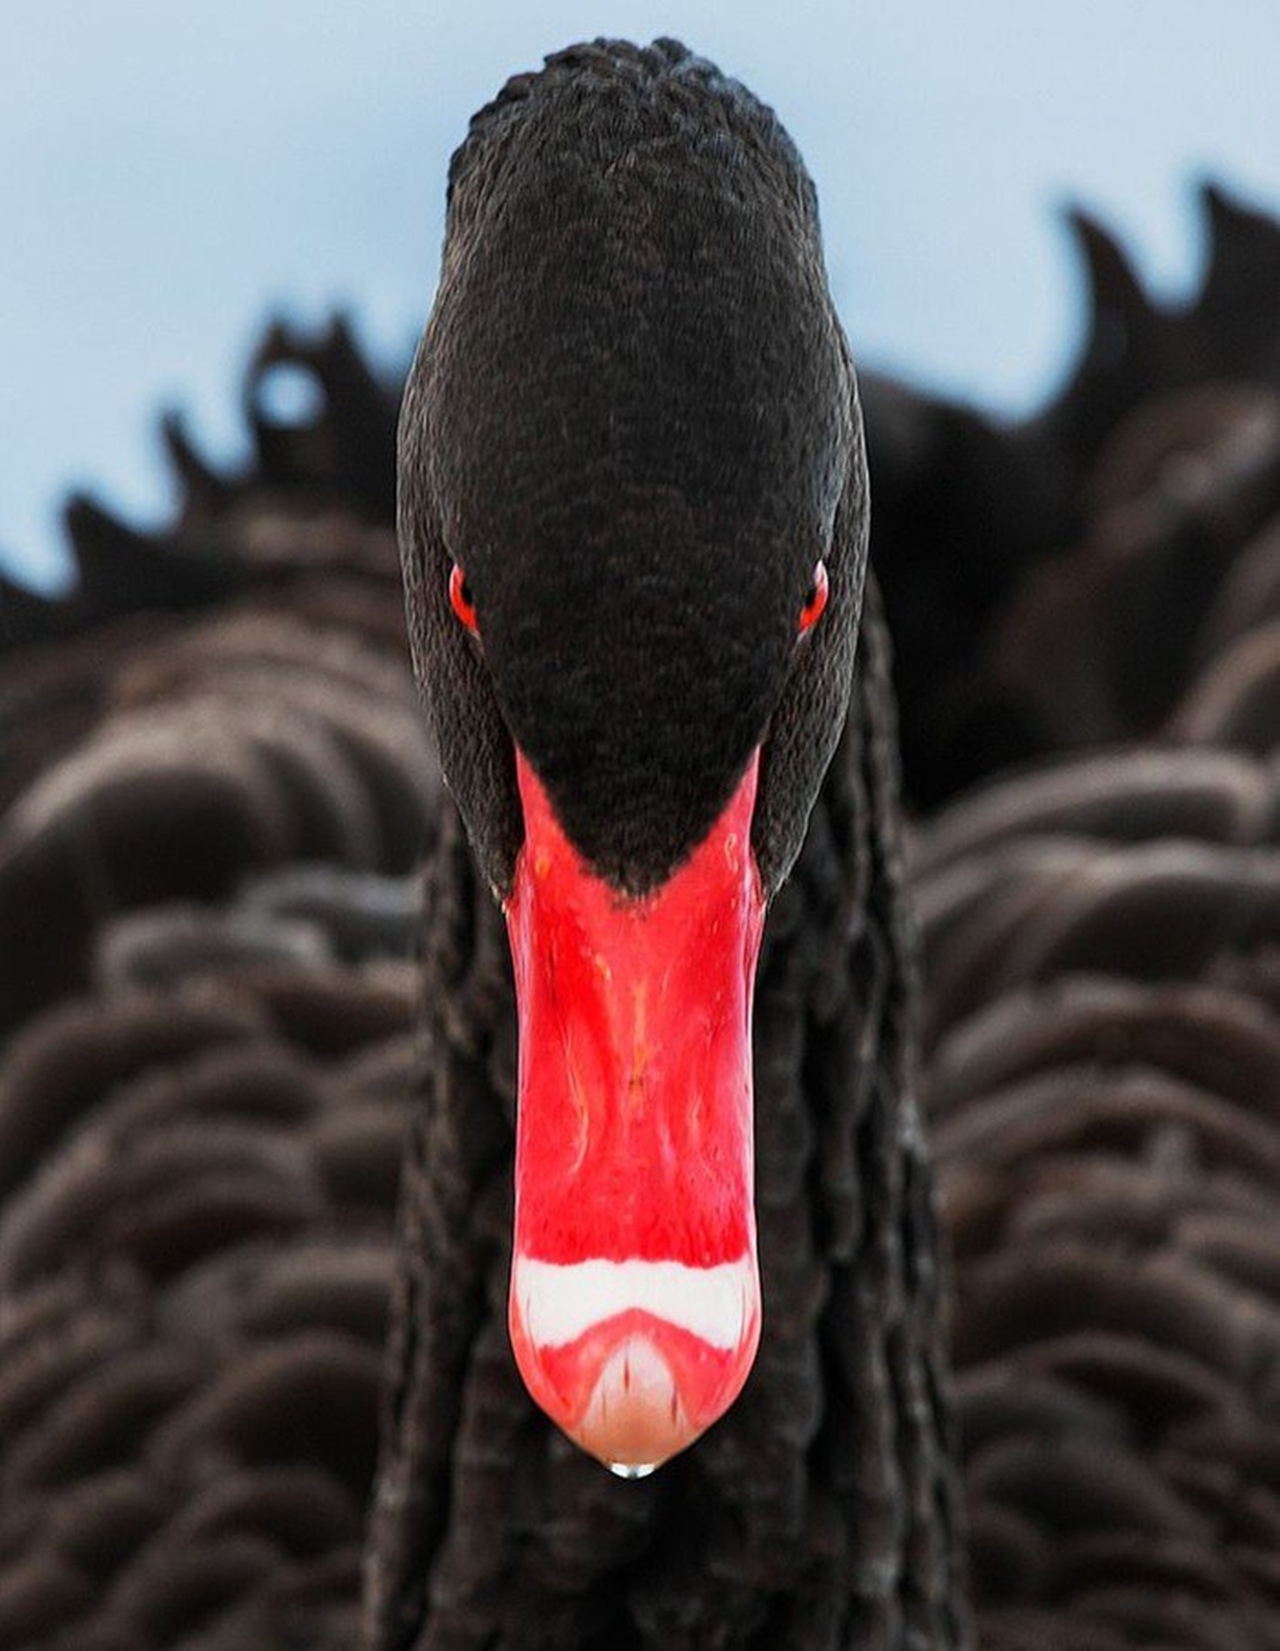 black Swan